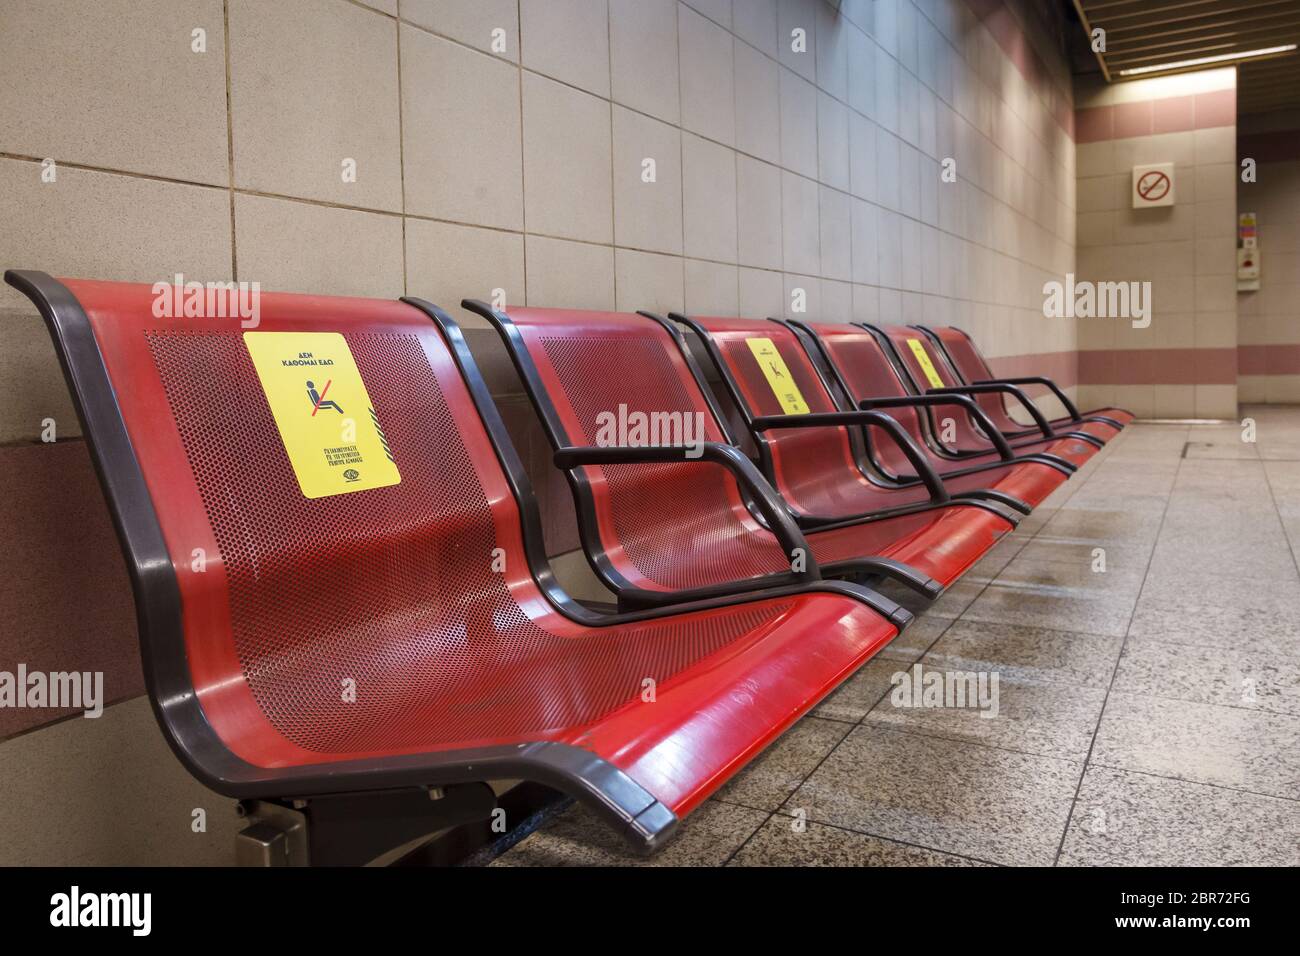 "Non sono qui", dicono i documenti sulle sedie della stazione della metropolitana di Omonoia, ad Atene, in quanto il governo chiede ai passeggeri di utilizzare i mezzi posti Foto Stock